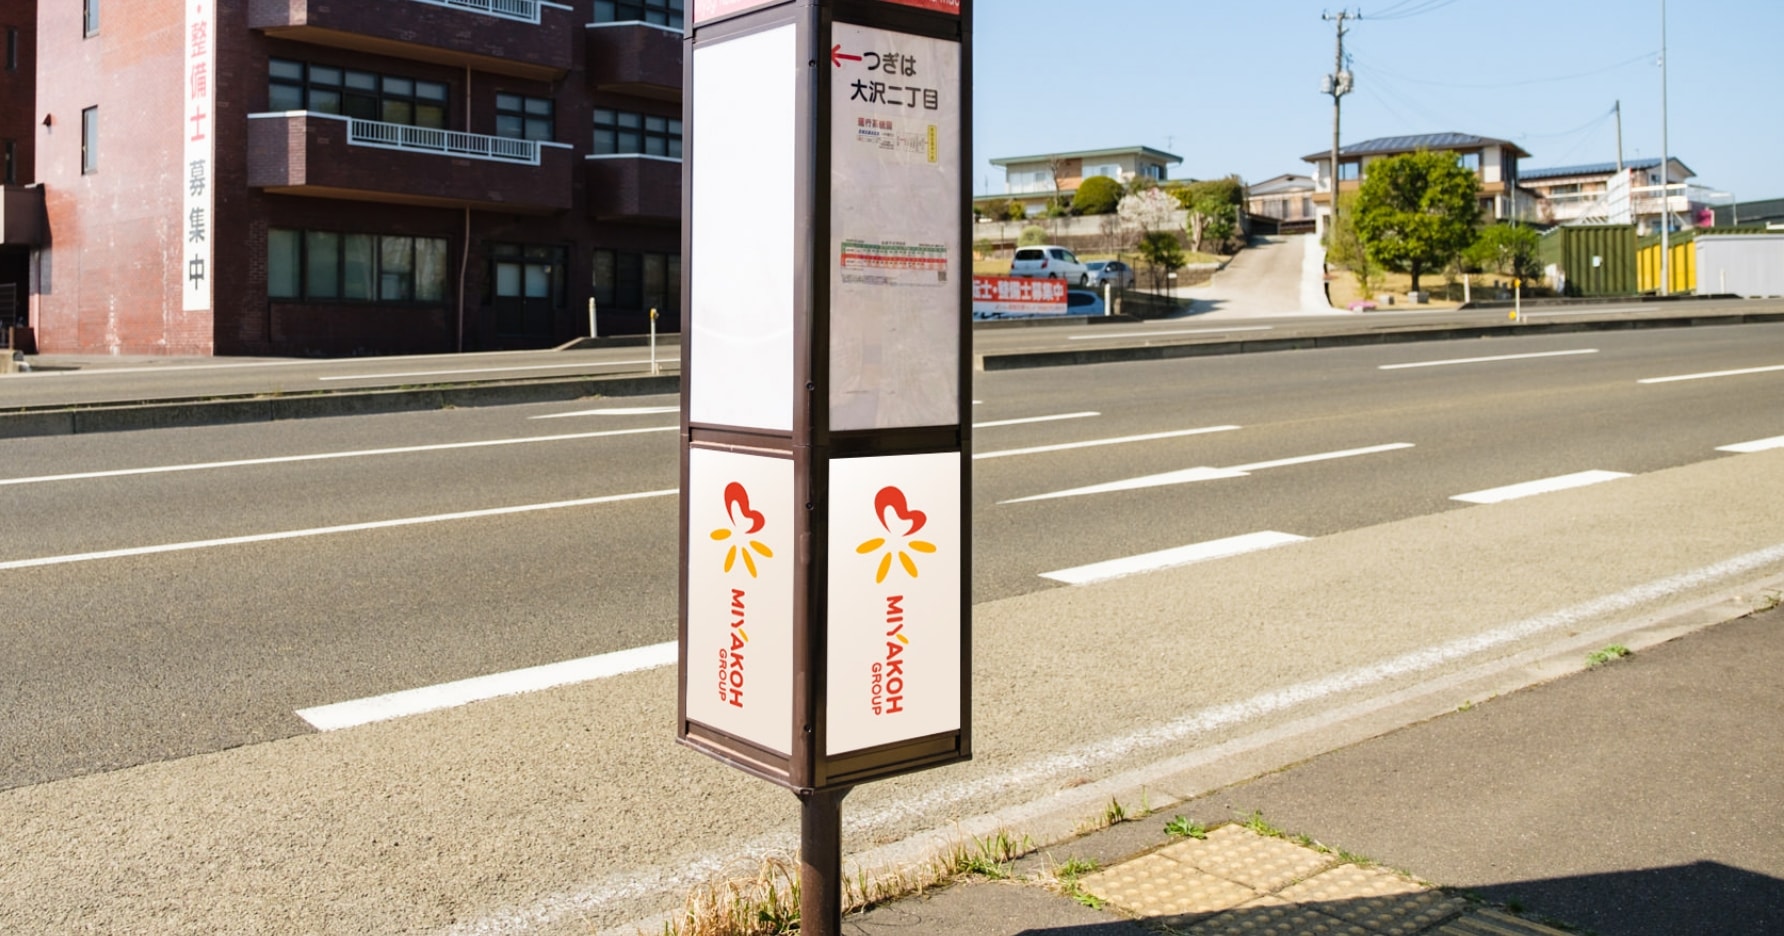 バス停広告イメージ